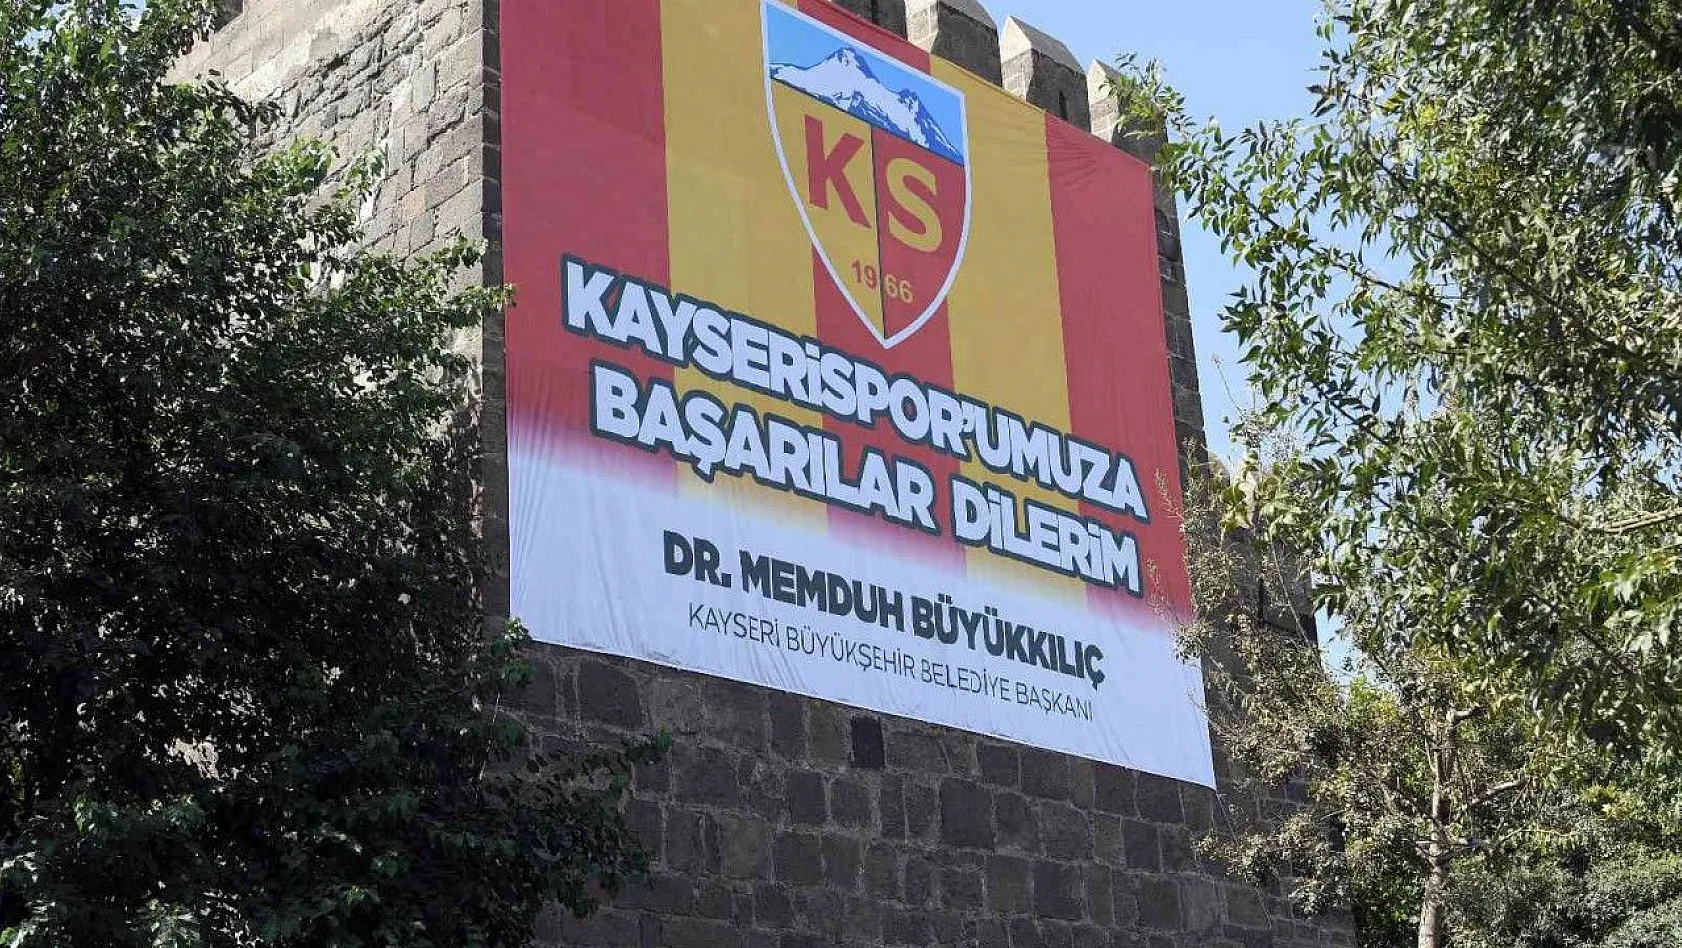 Kale surlarında Kayserispor'a 'pankartlı' destek!